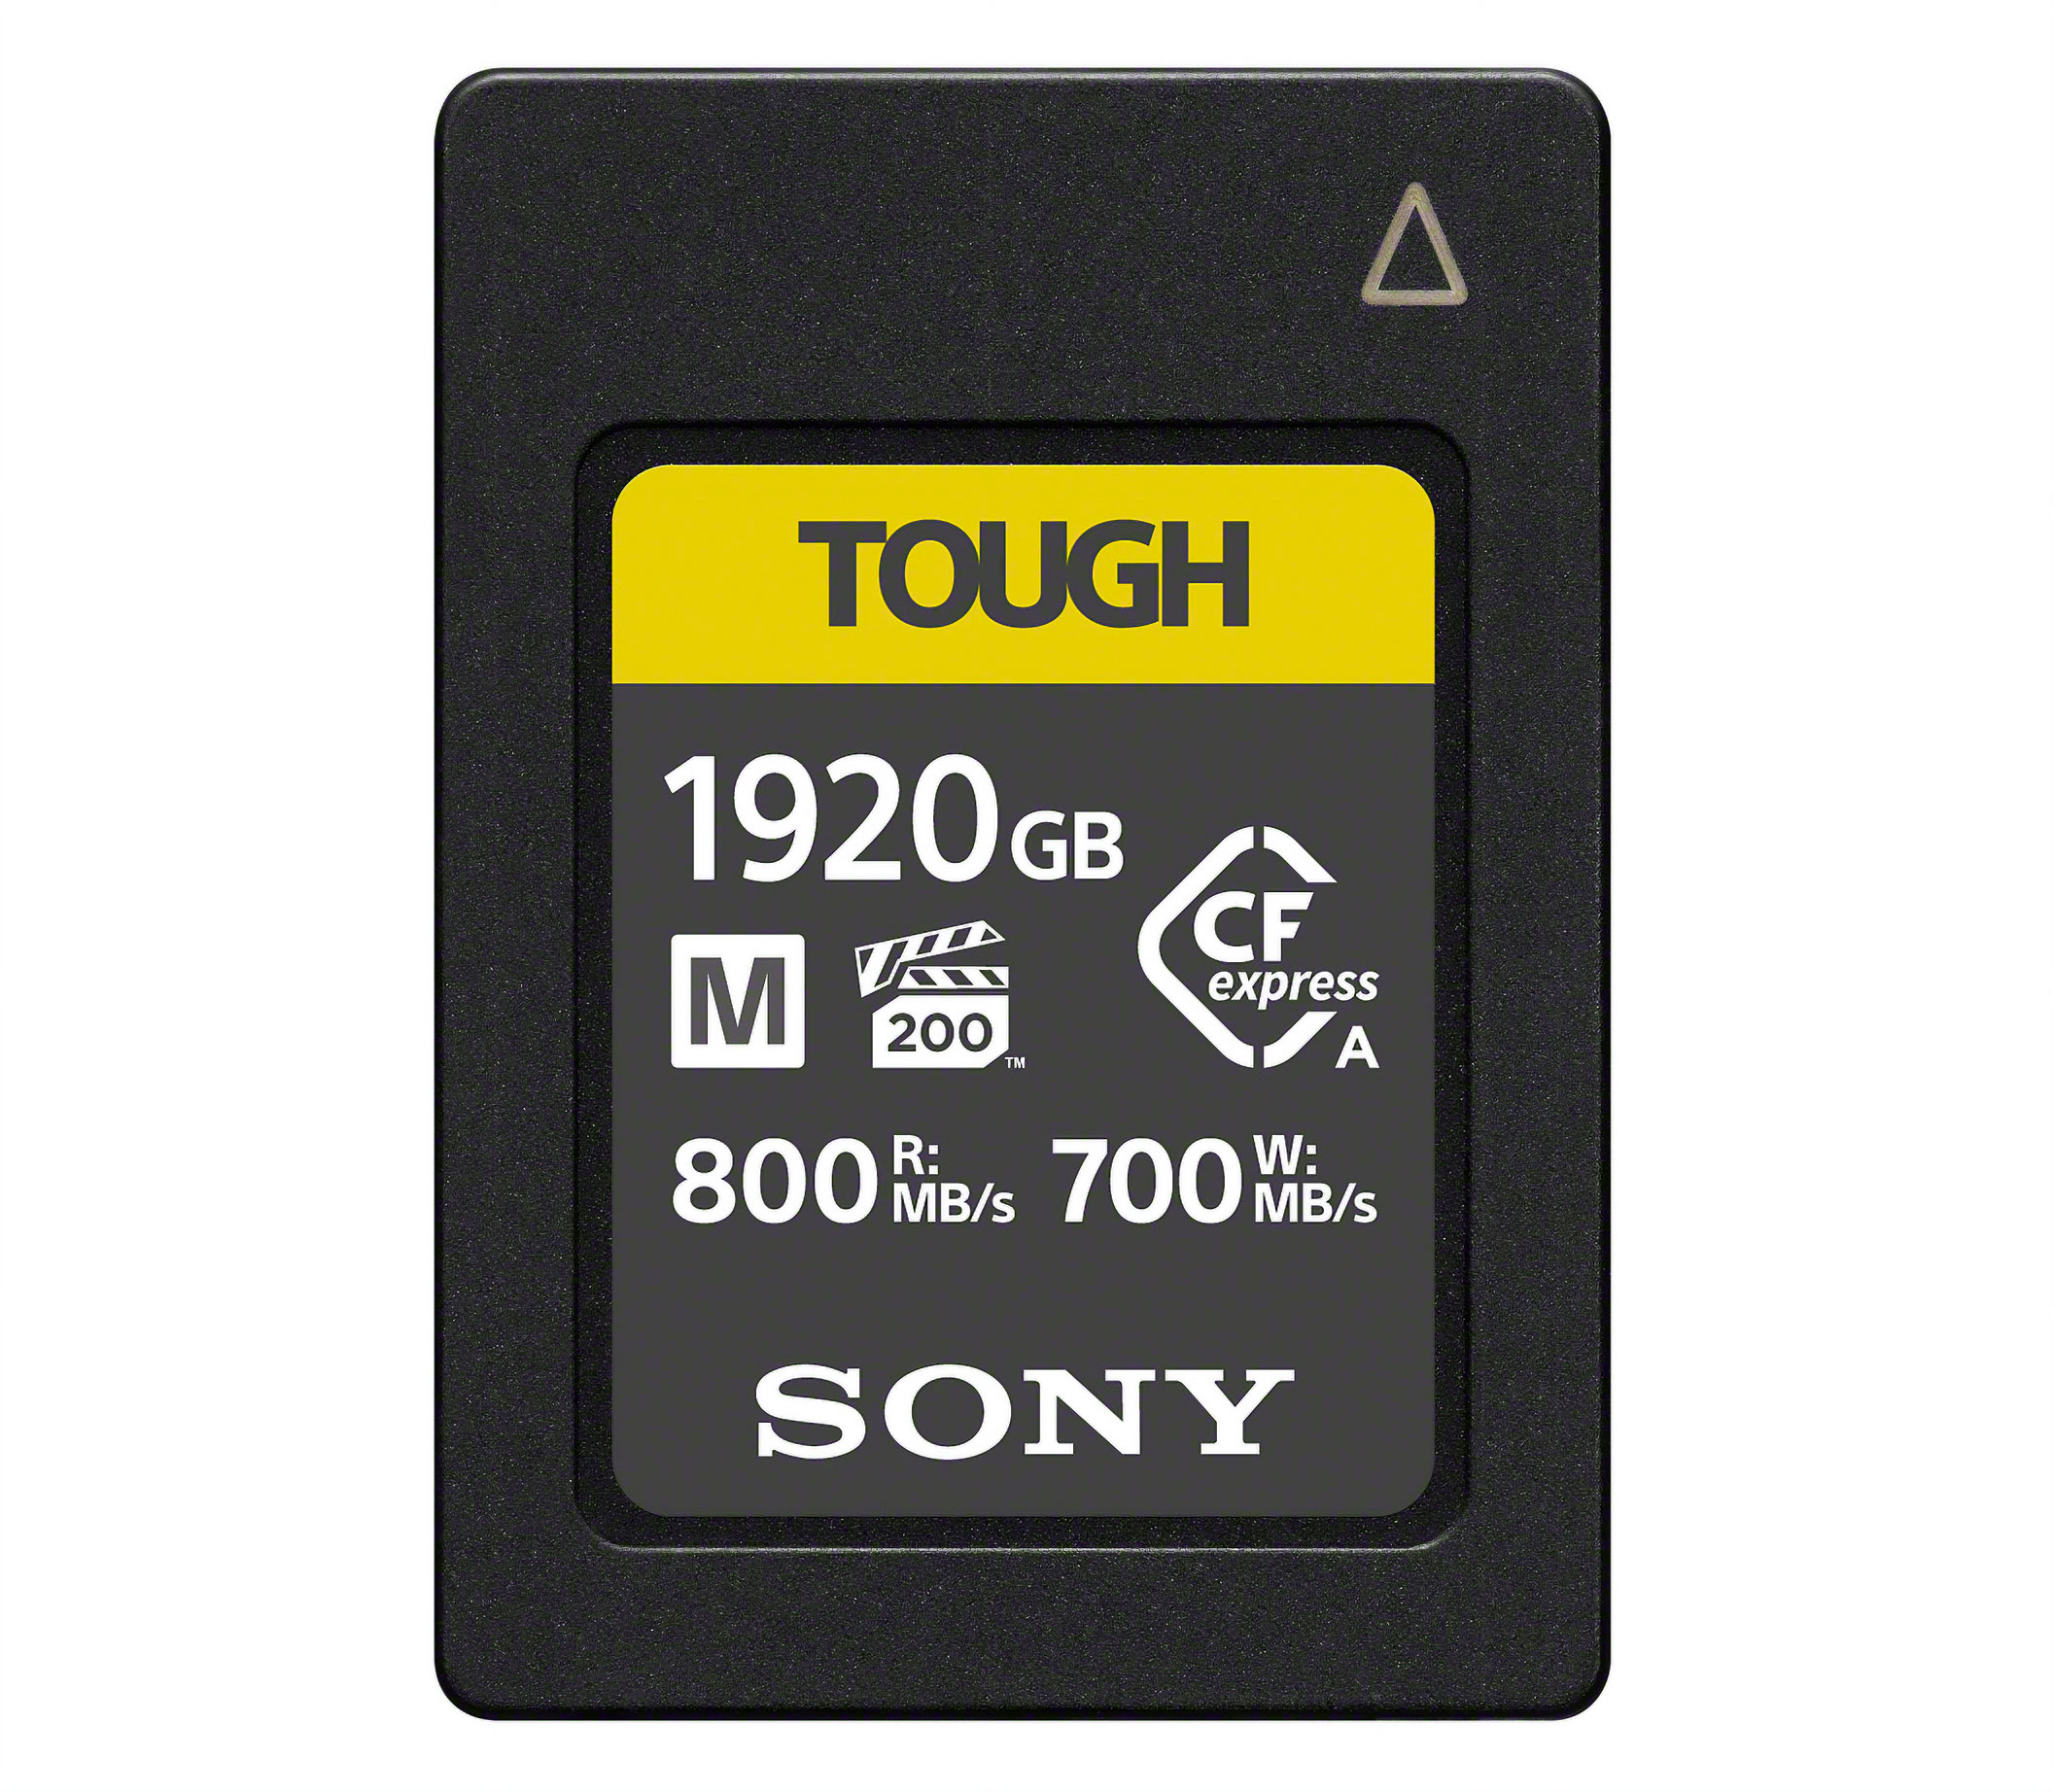 Sony CFexpress Type A Tough M 1920GB